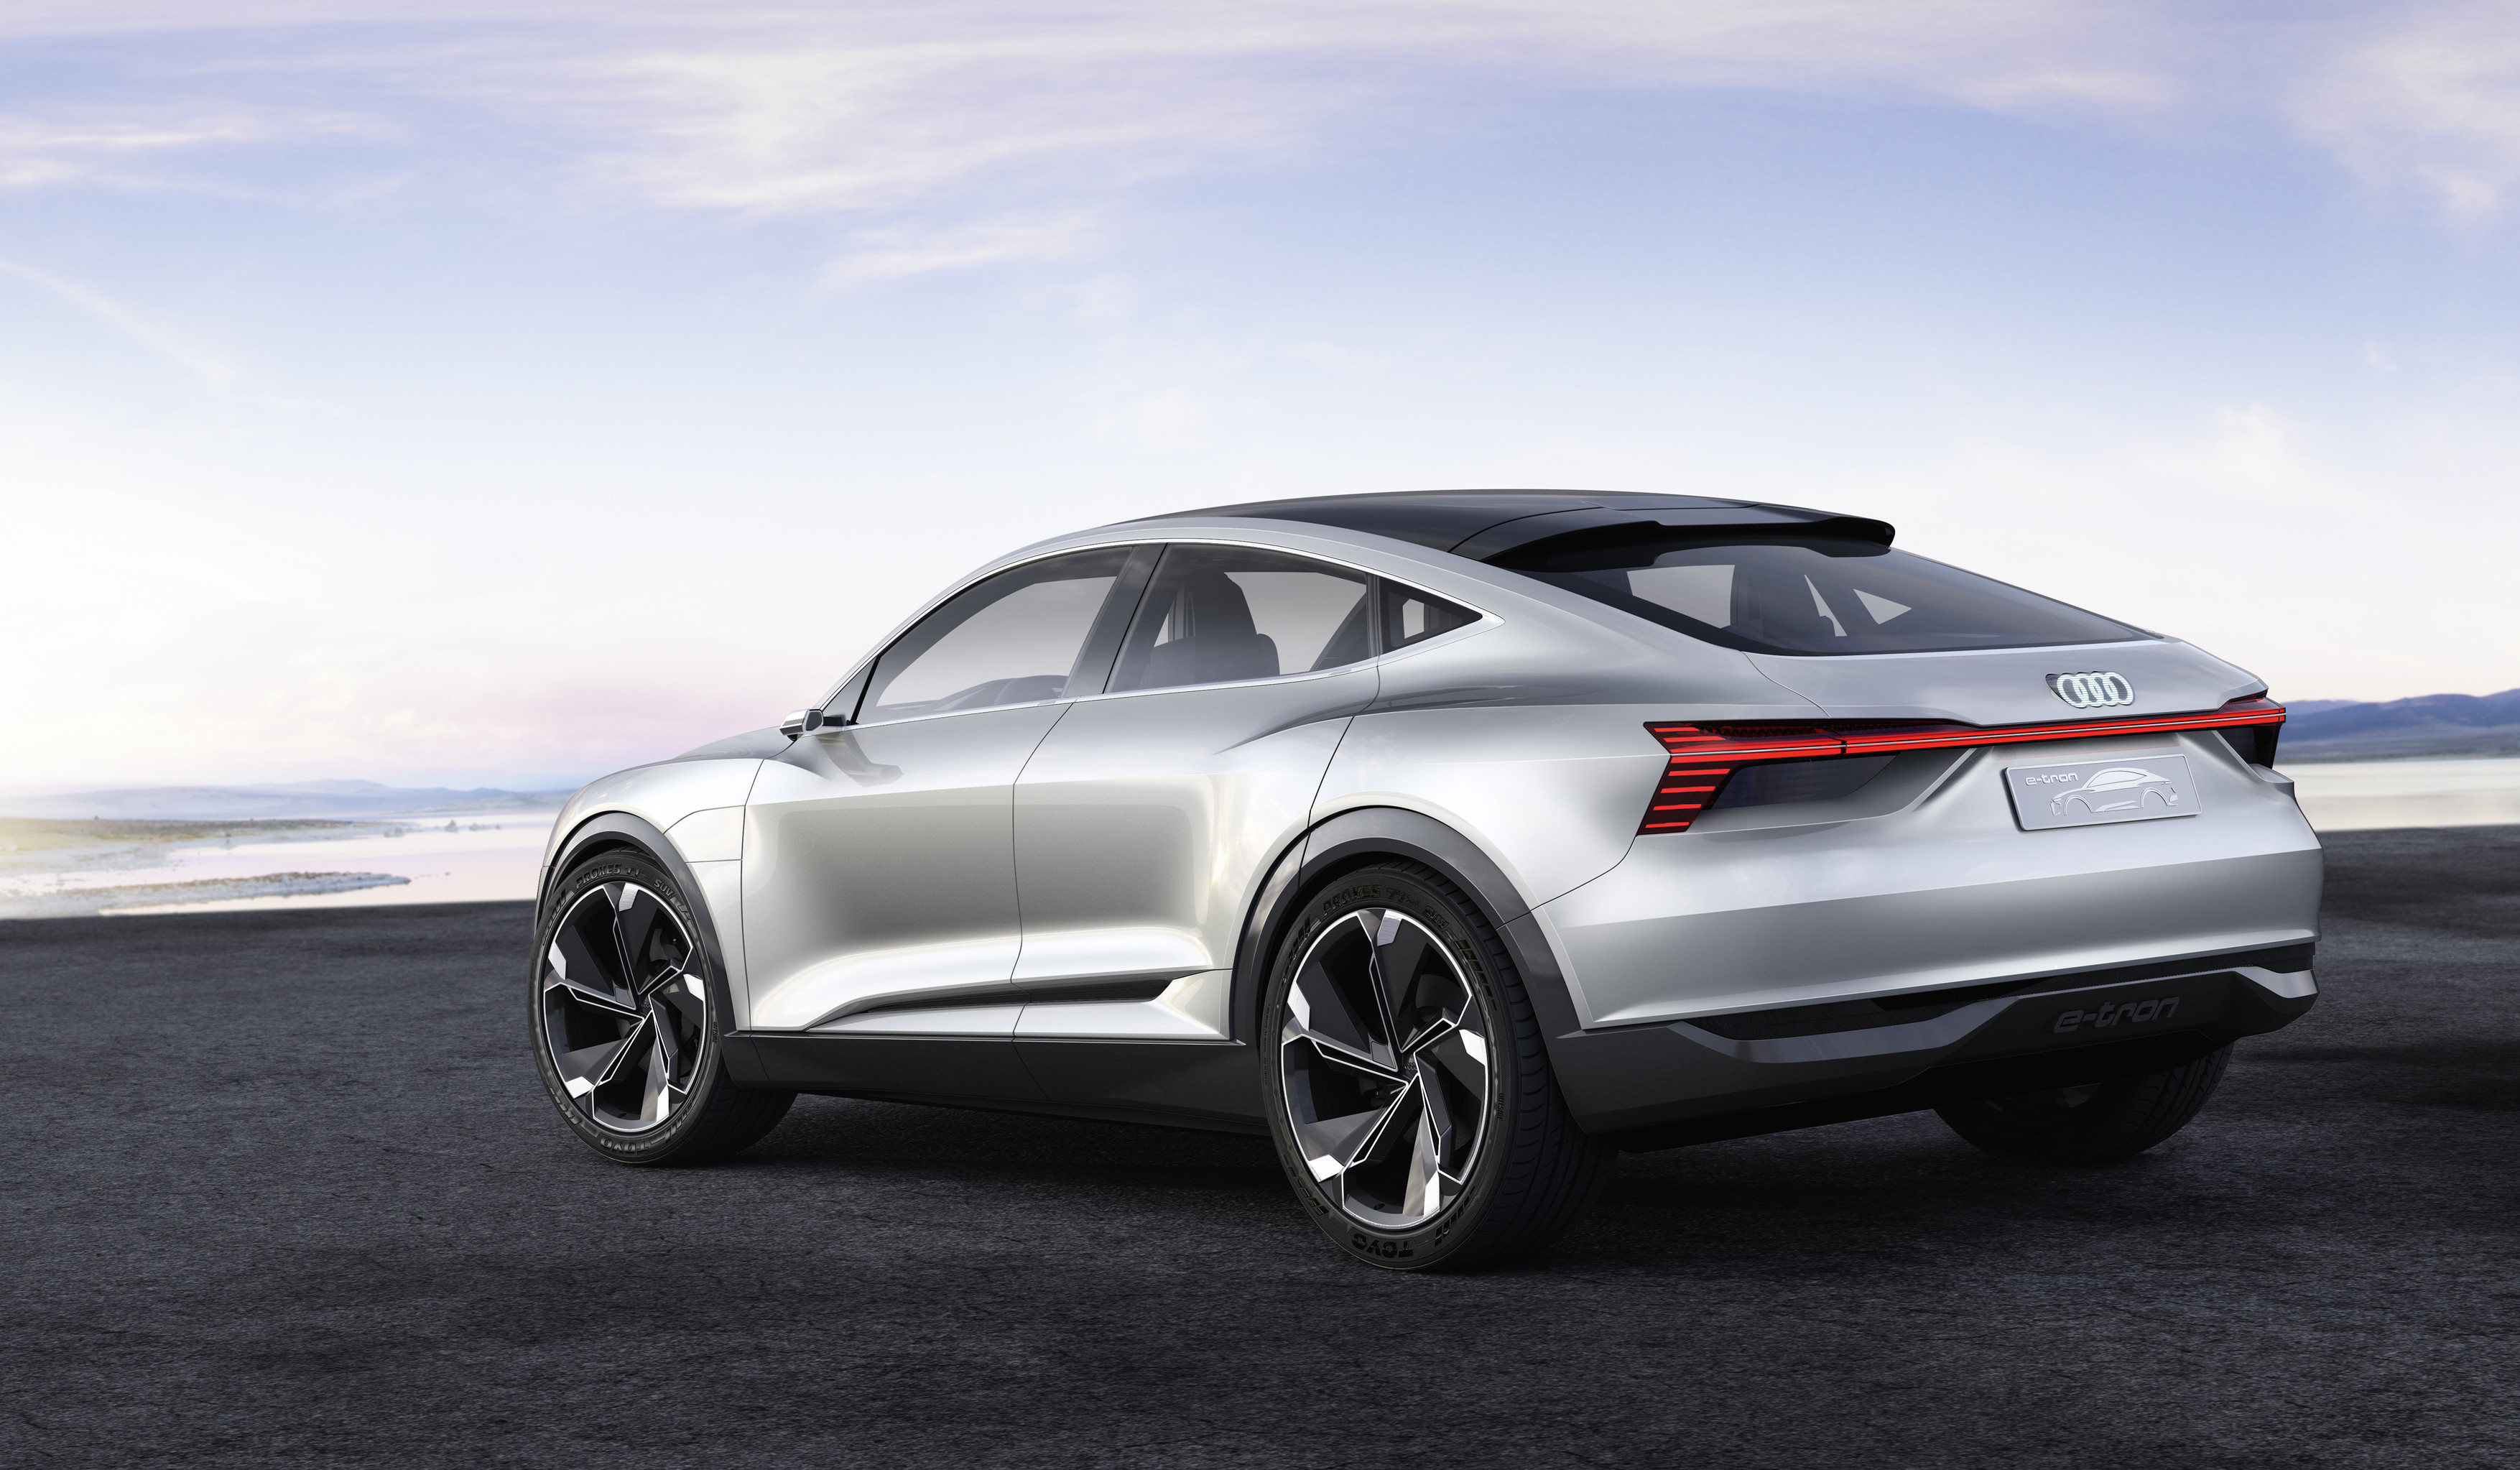 2017 Audi e-tron concept car in silver rear view